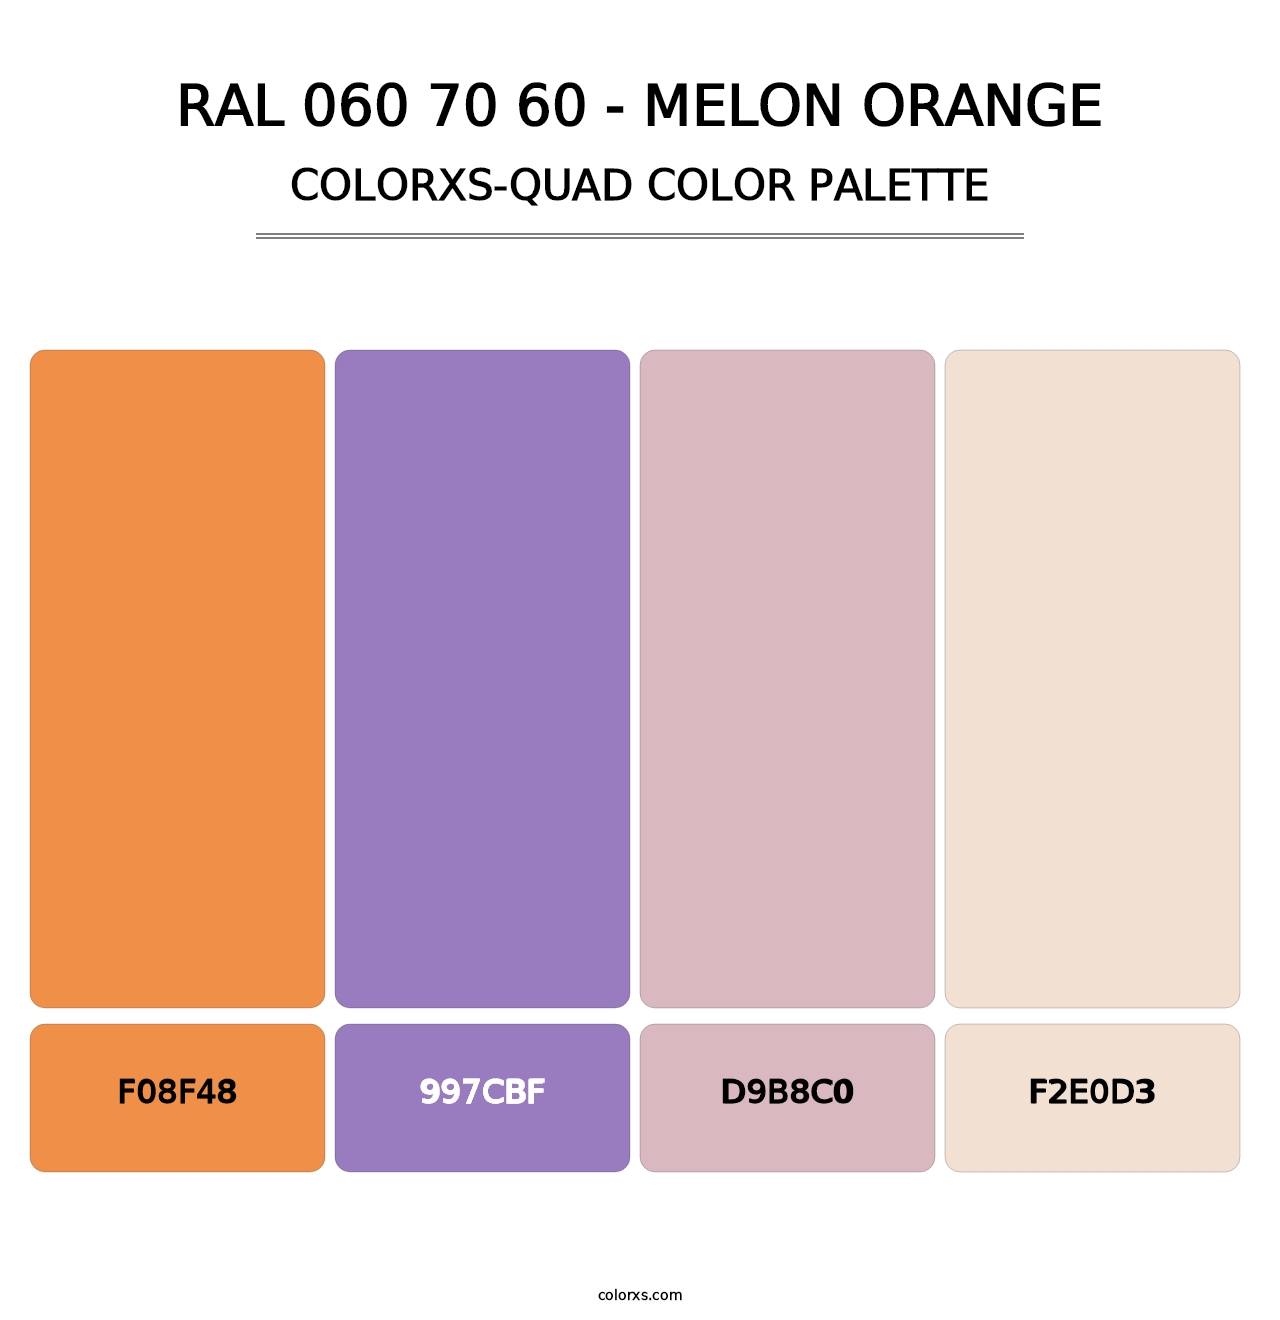 RAL 060 70 60 - Melon Orange - Colorxs Quad Palette